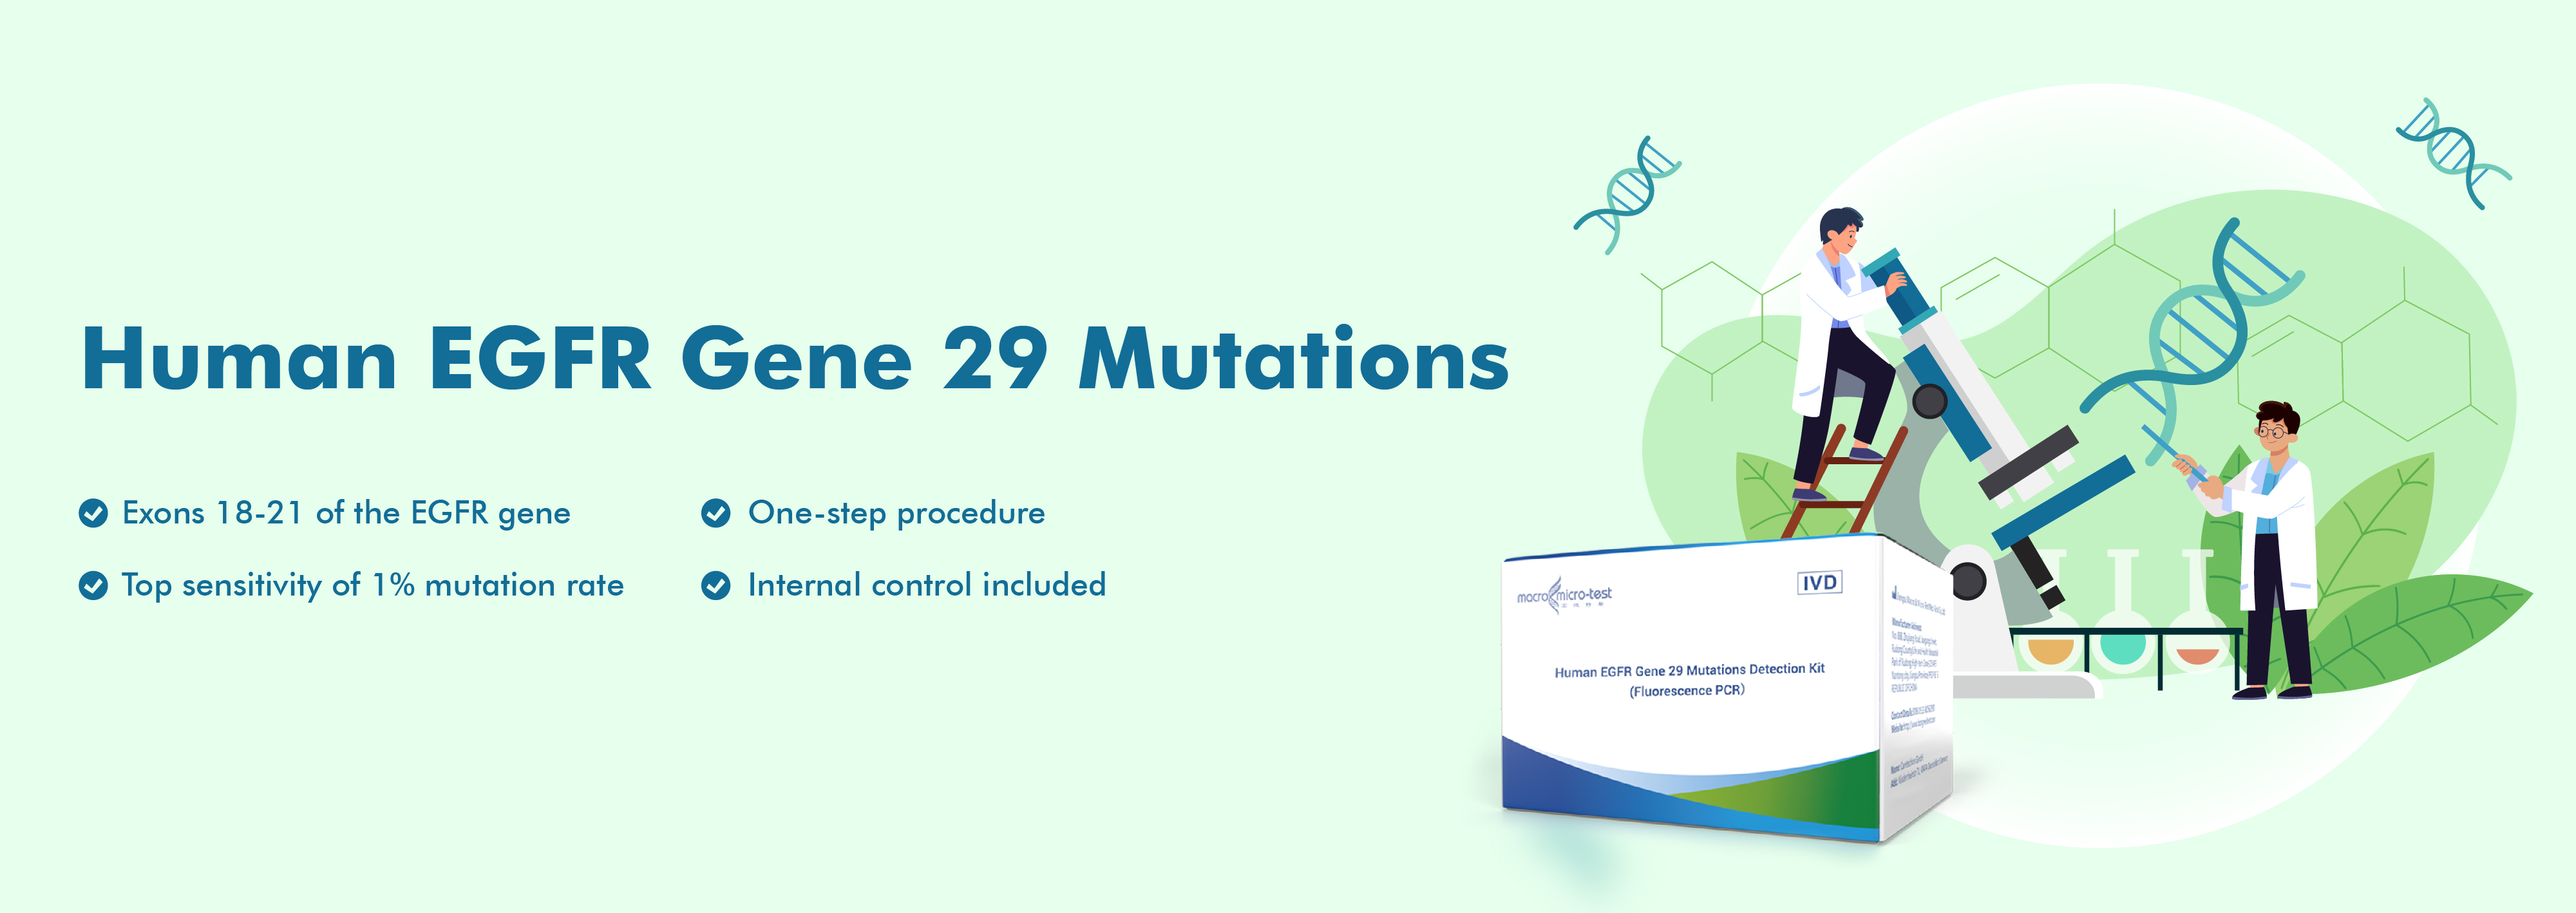 Mutações do gene EGFR humano 29